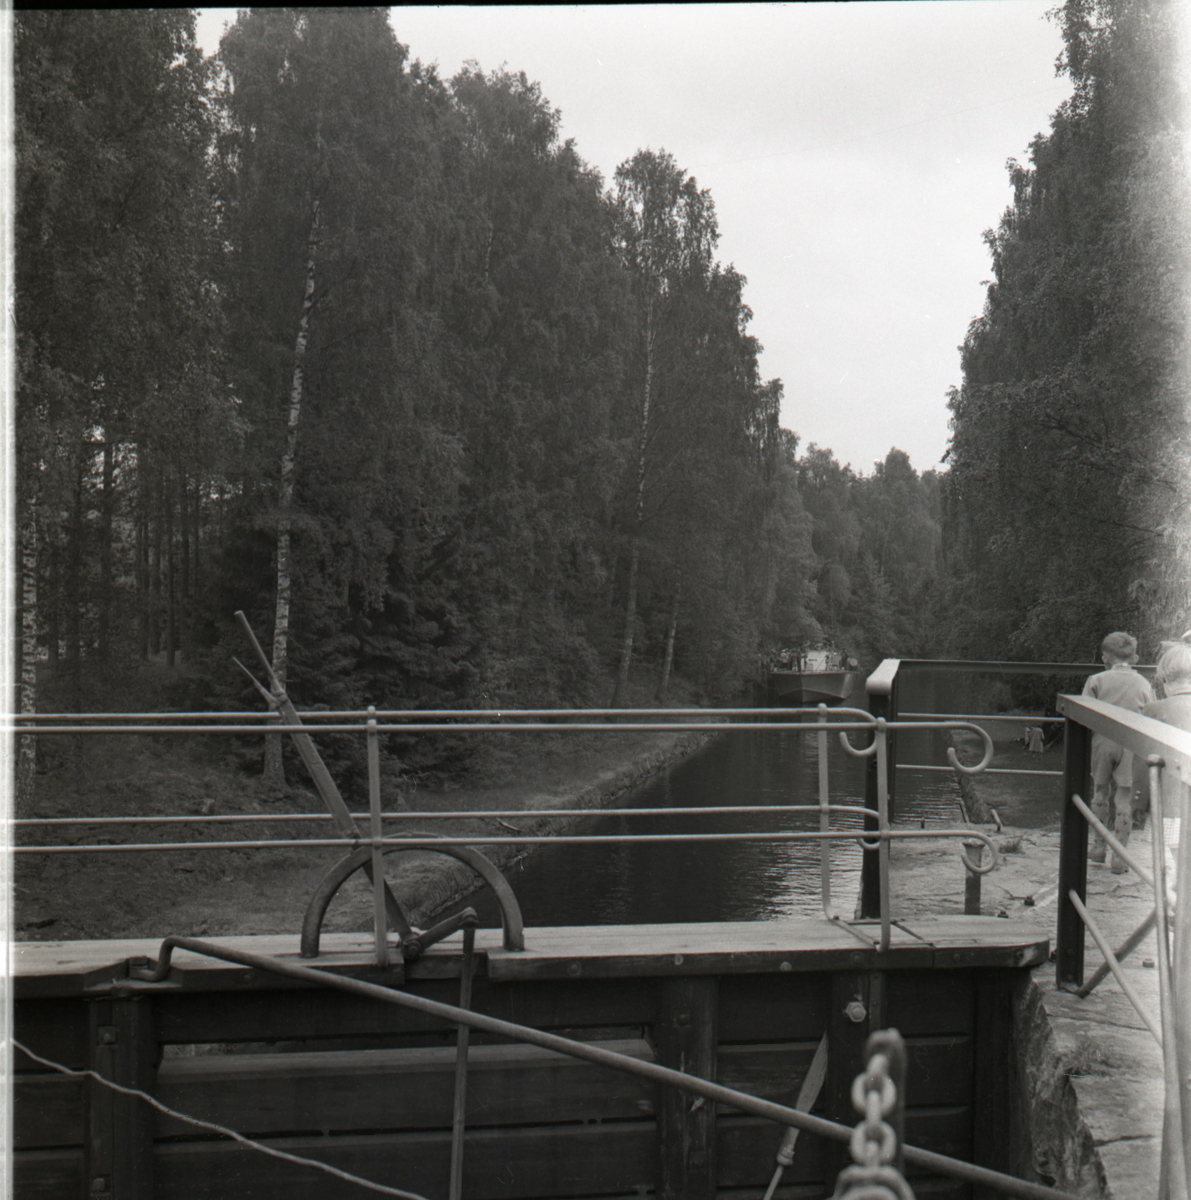 Samlefoto: Elco-klasse MTB-er gjennom Bandak-kanalen i juli 1953.
Slusekjøring.